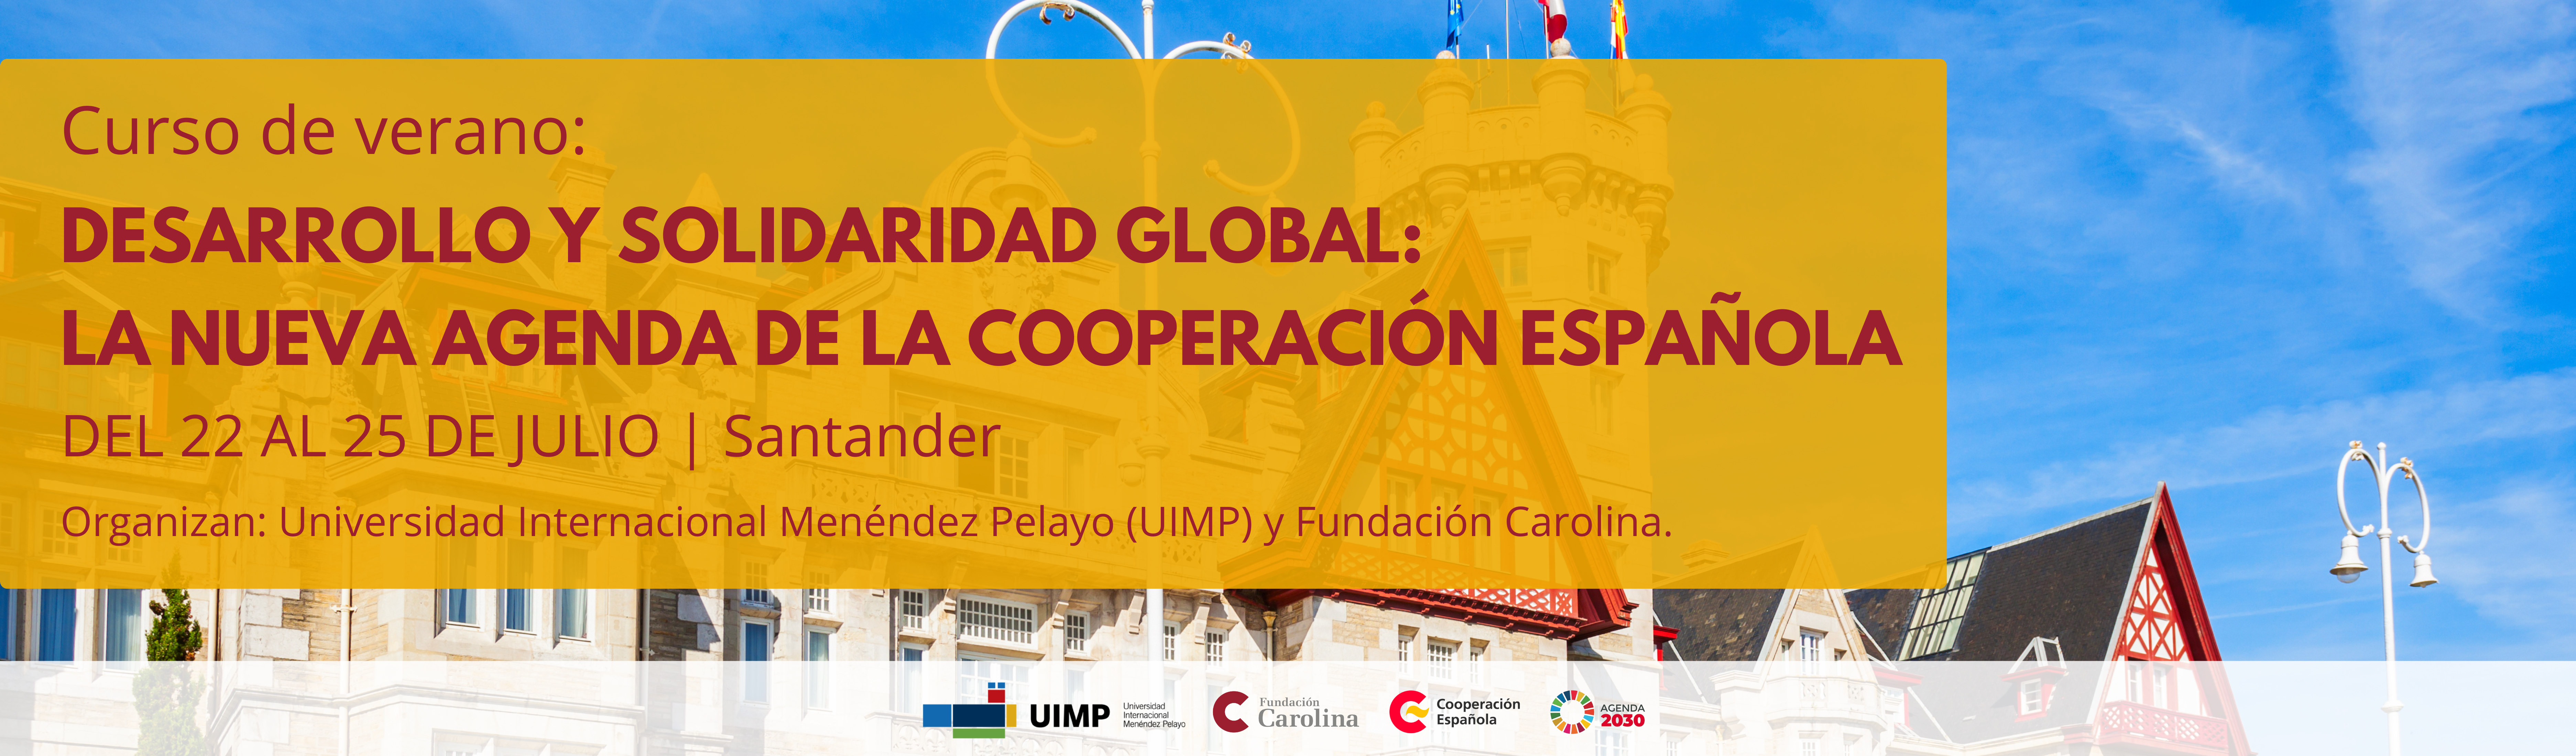 Curso de verano: Desarrollo y solidaridad global: la nueva agenda de la Cooperación Española